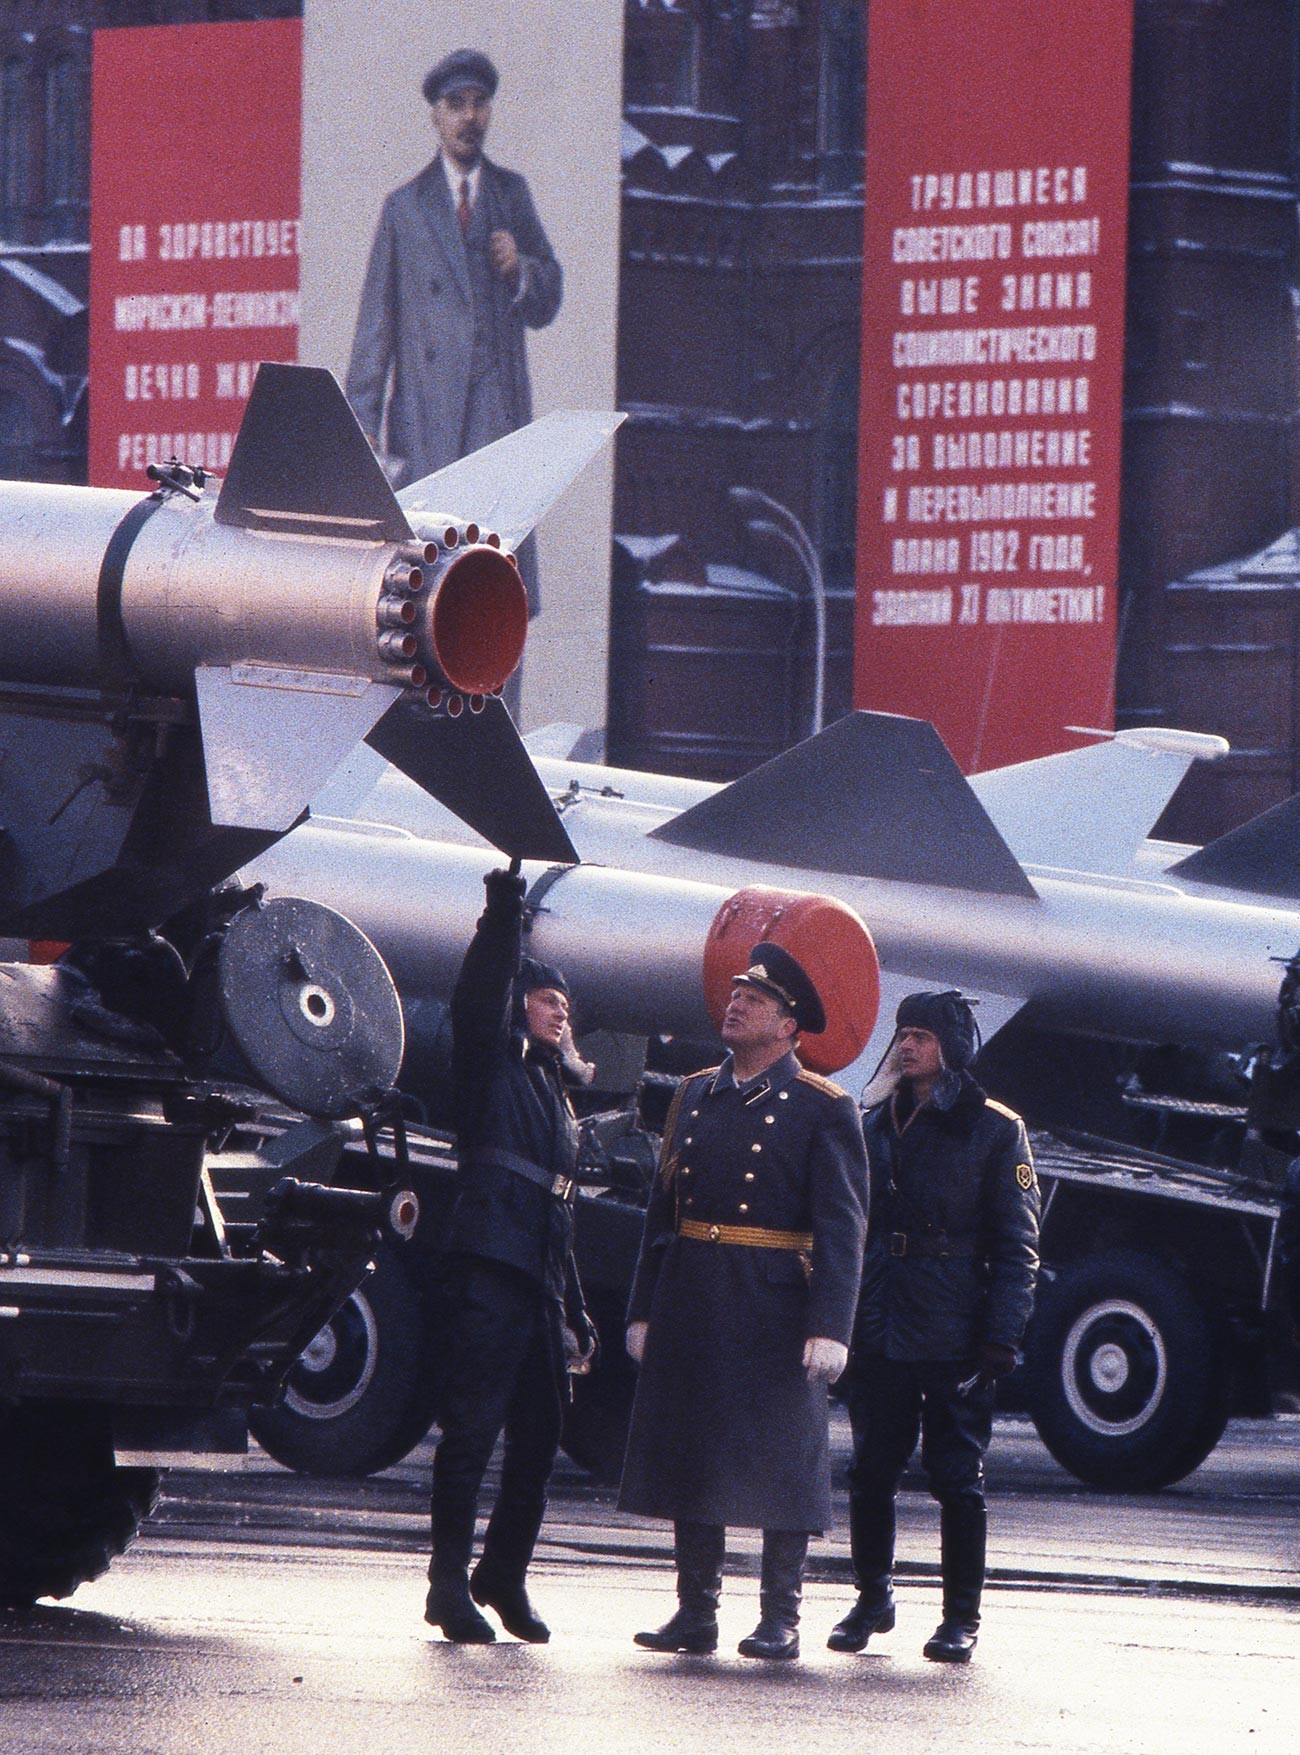 Официр са војницима испод ракете која може да носи нуклеарну бојеву главу пред почетак параде на Црвеном тргу поводом 65. годишњице Октобарске револуције.